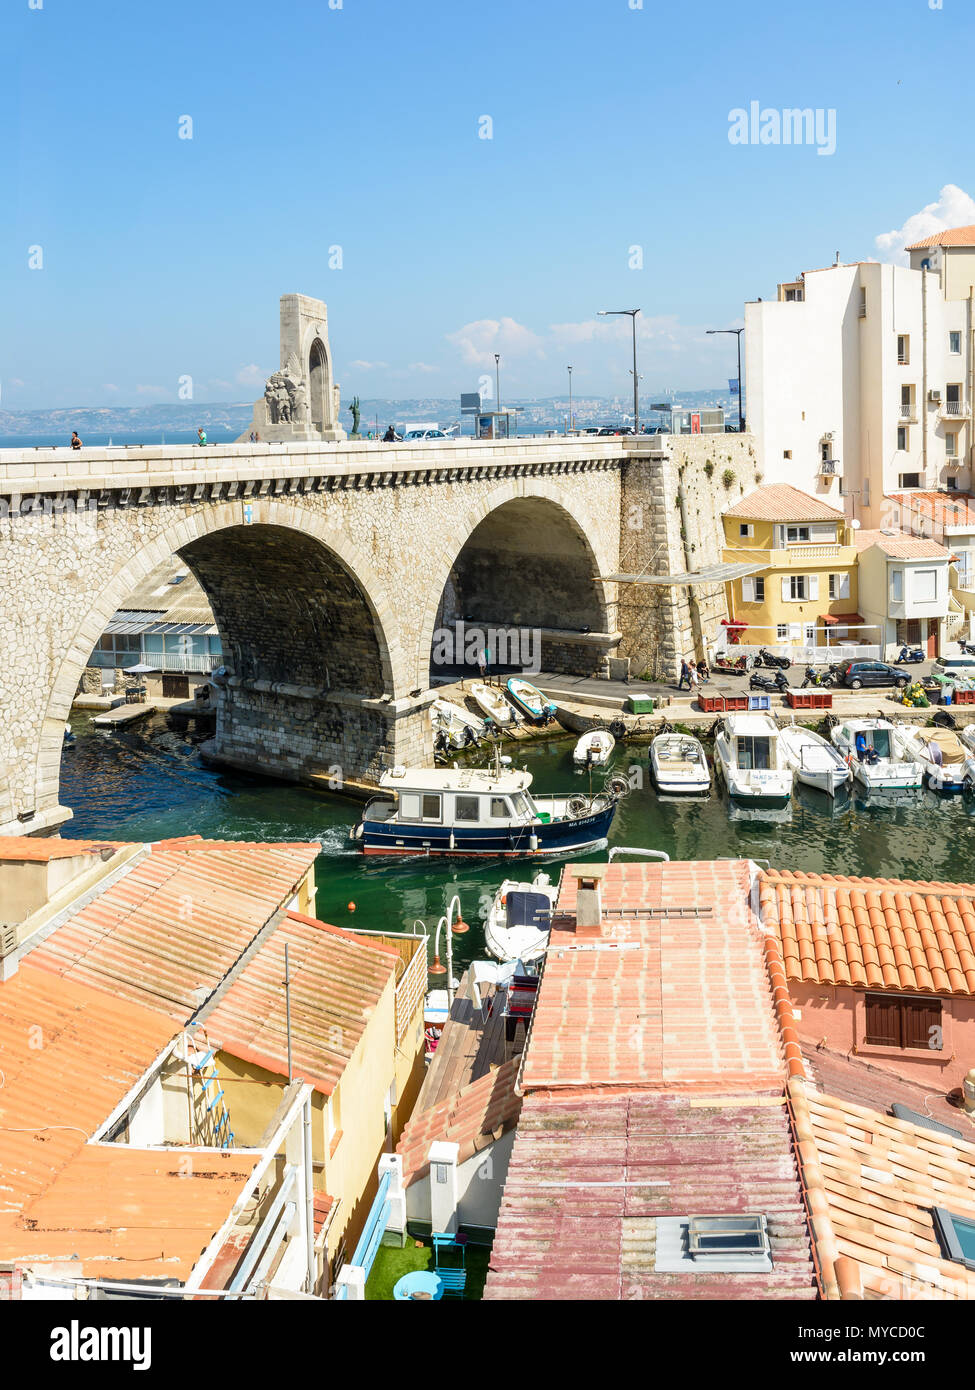 Marseille, France - 19 mai 2018 : vue sur le petit port de pêche du Vallon des Auffes montrant les bateaux, cabanons et pont-route de la Kennedy c Banque D'Images